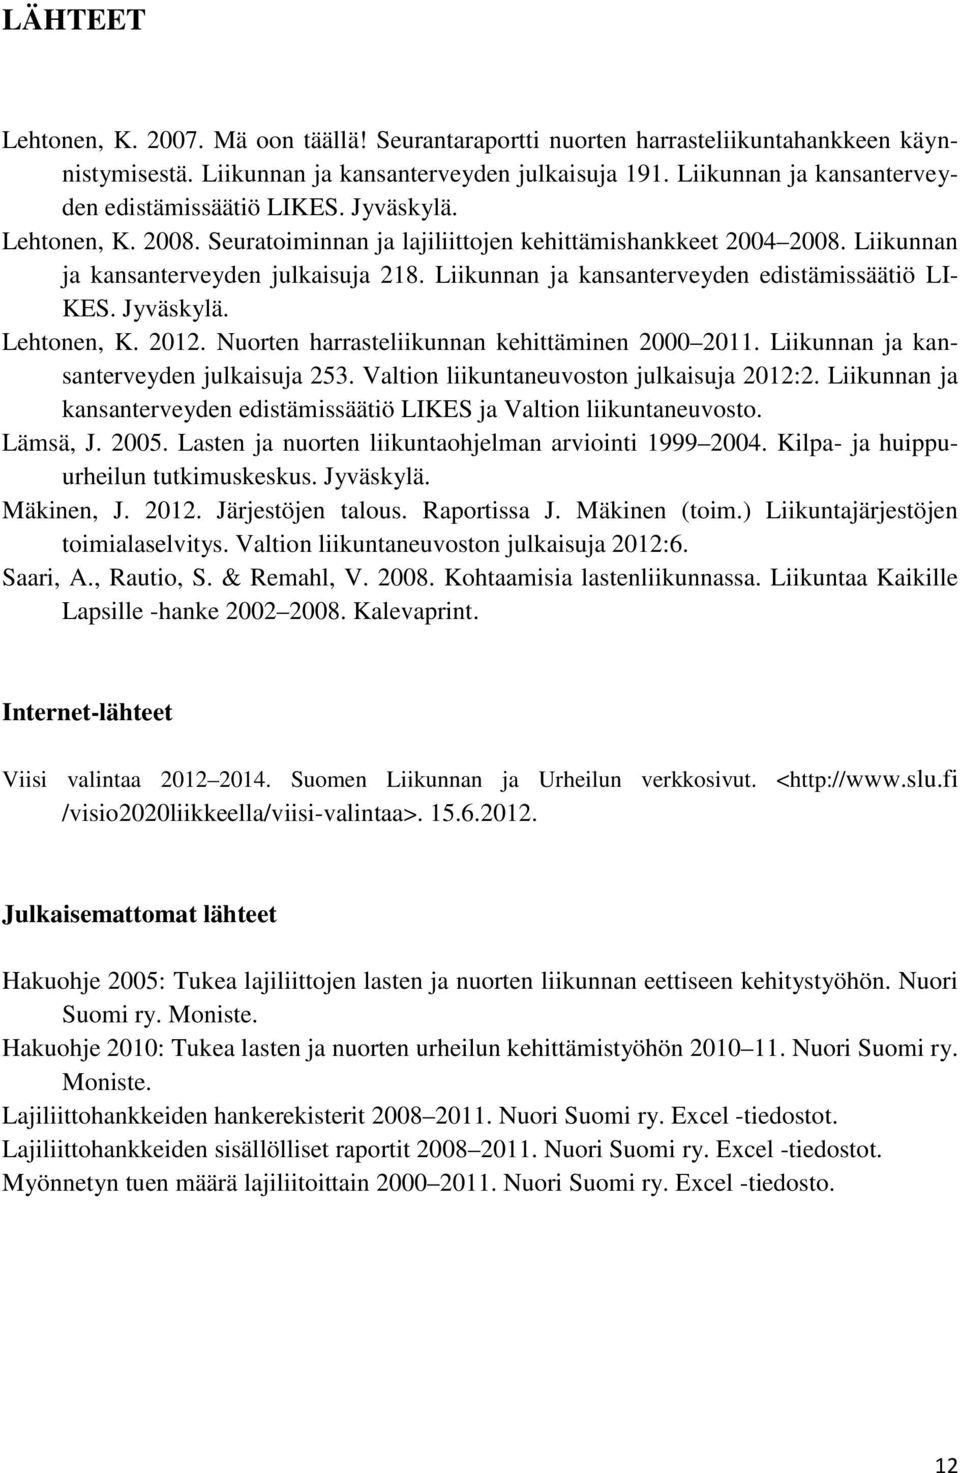 Liikunnan ja kansanterveyden edistämissäätiö LI- KES. Jyväskylä. Lehtonen, K. 2012. Nuorten harrasteliikunnan kehittäminen 2000 2011. Liikunnan ja kansanterveyden julkaisuja 253.